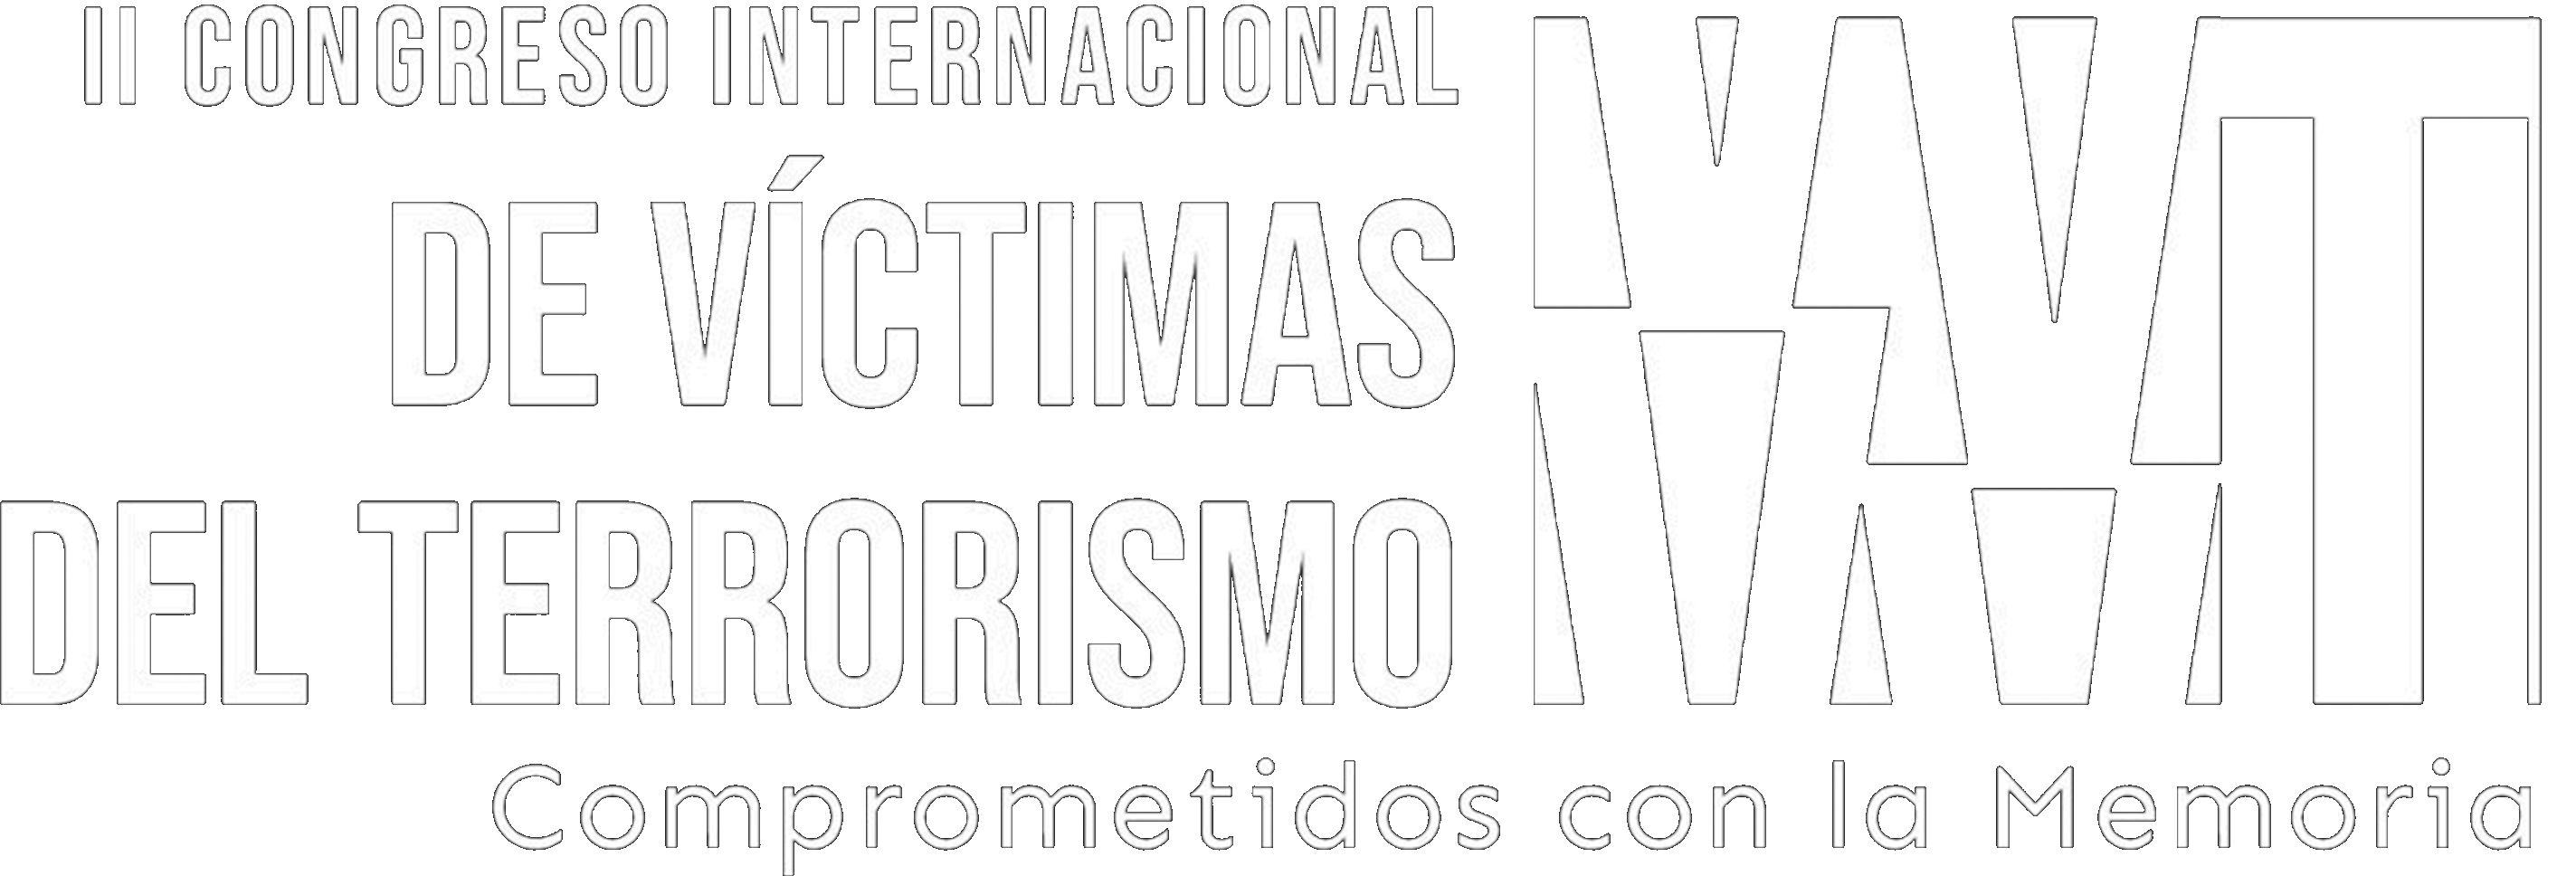 I CONGRESO INTERNACIONAL DE VÍCTIMAS DEL TERRORISMO